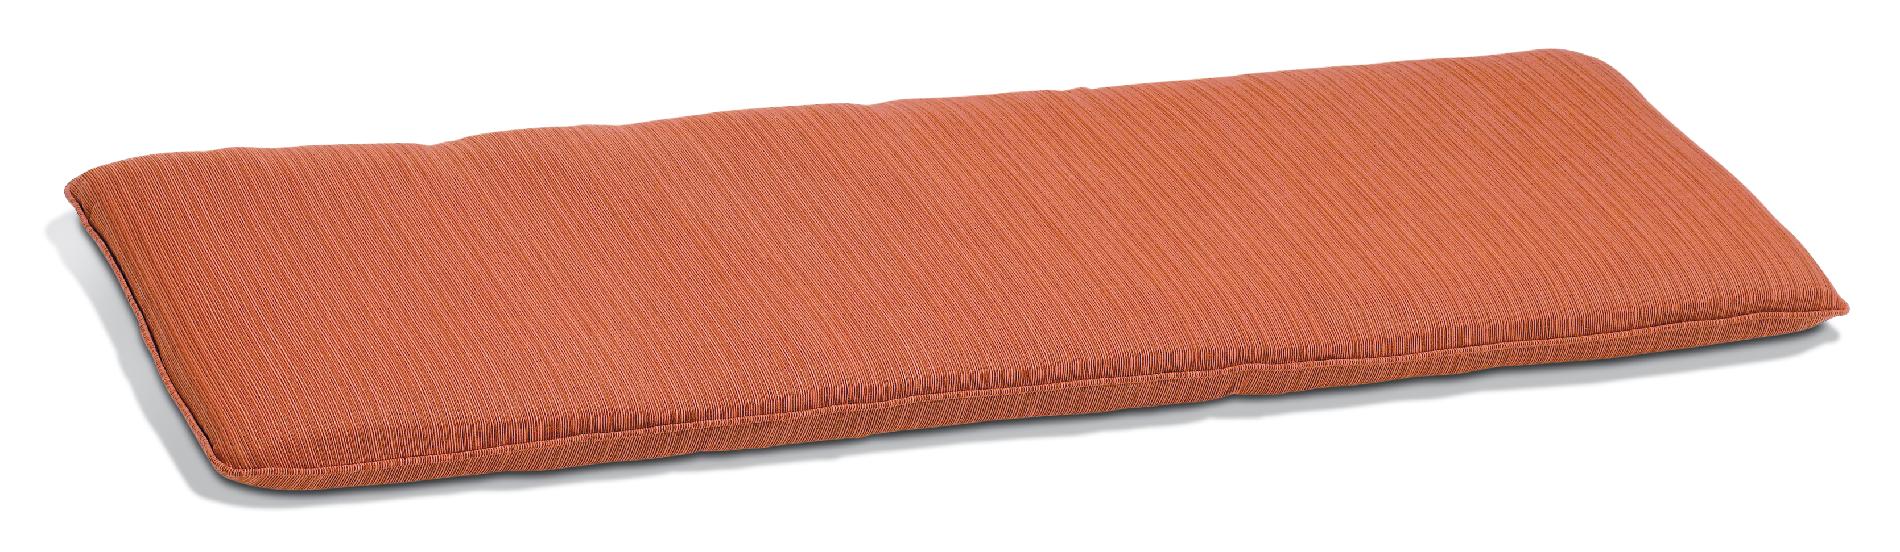 5' Backless Bench Cushion  Sunbrella&reg; Fabric  Dupione Papaya